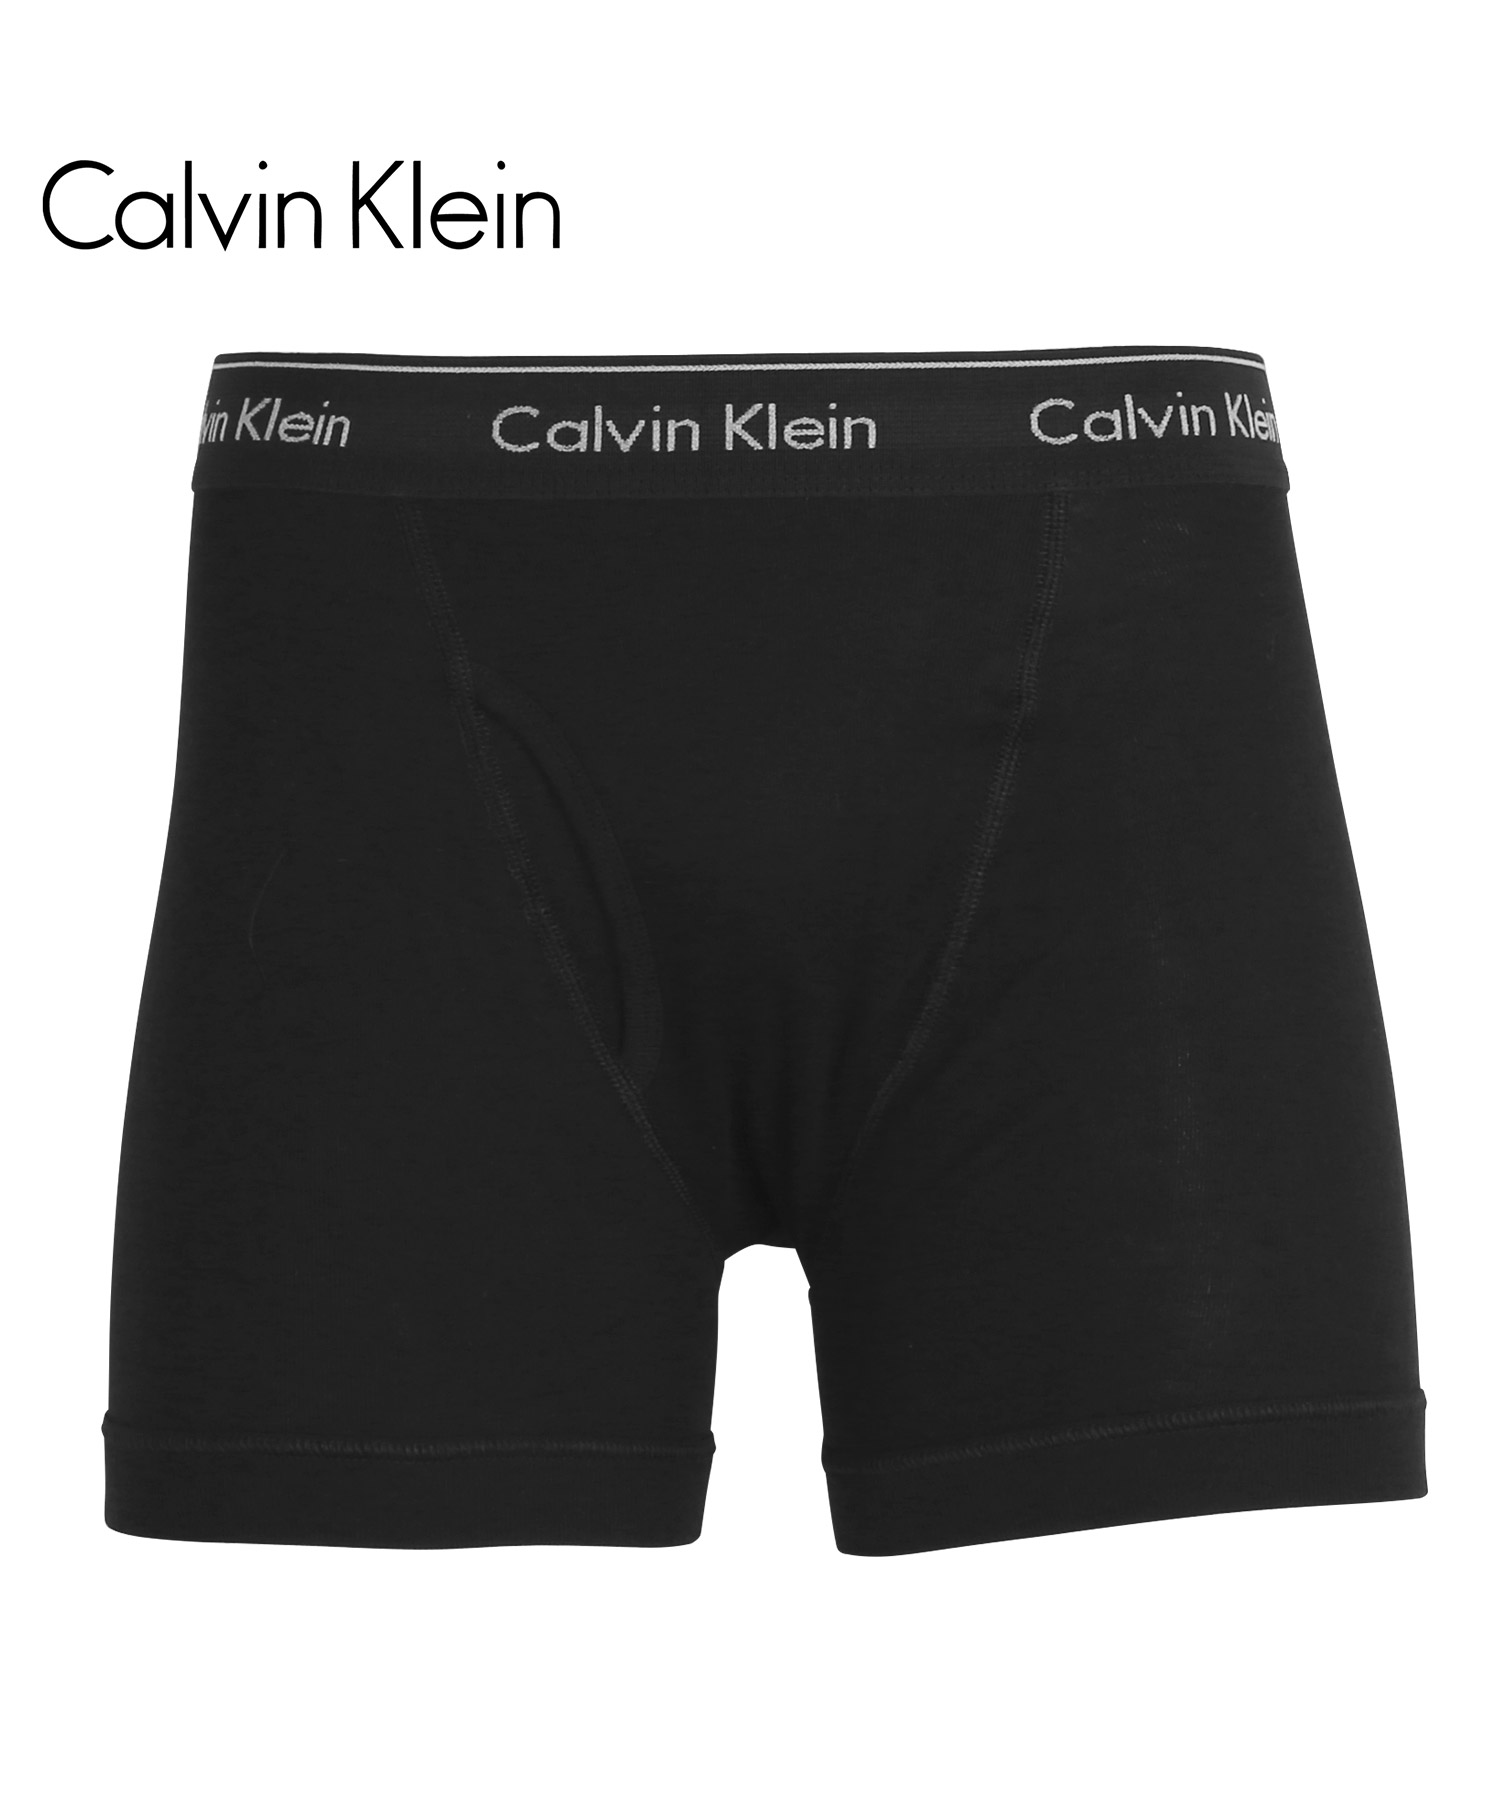 カルバンクライン ボクサーパンツ Calvin Klein ロング メンズ 下着 アンダーウェア 紳...